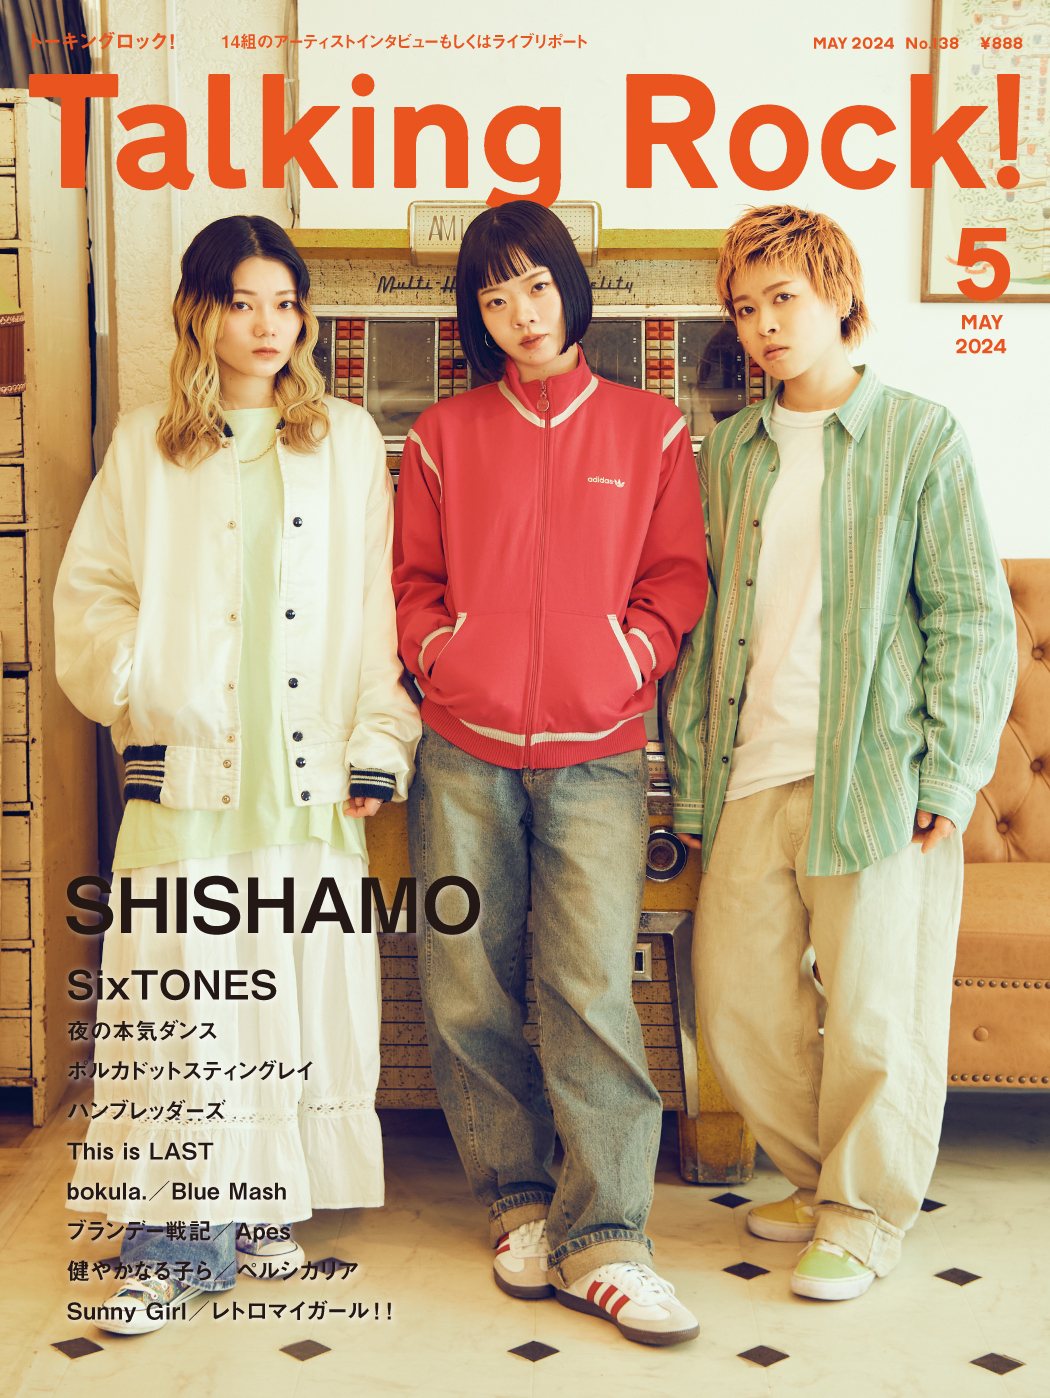 04.09(火)発売「Talking Rock!」5月号 表紙にSHISHAMOが決定!!! (04.04 